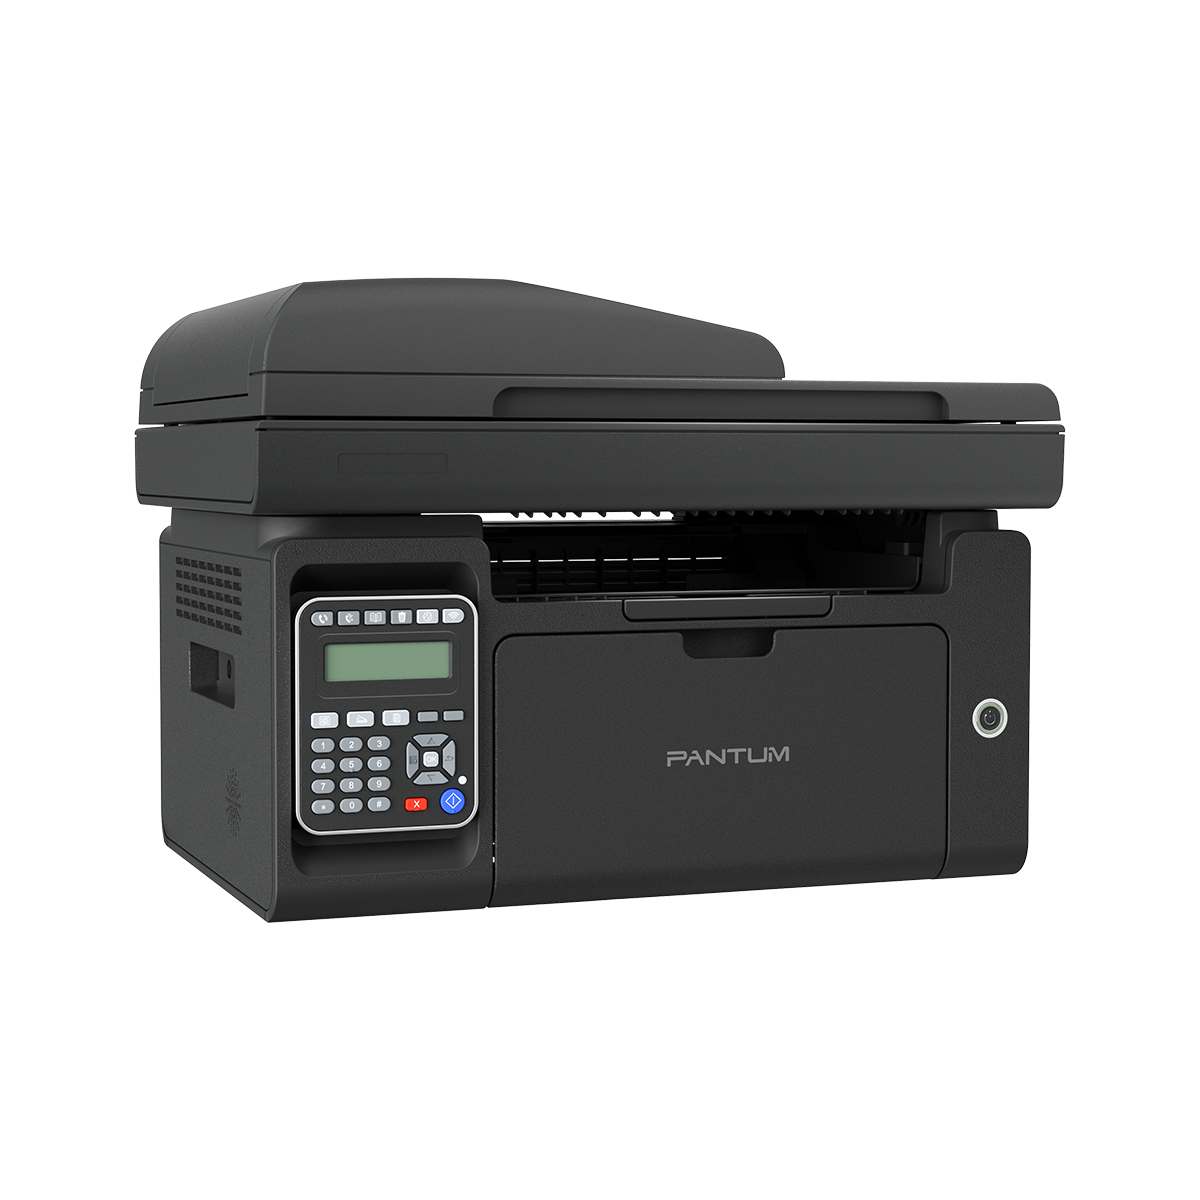 PANTUM M6600NW melnbalts daudzfunkciju printeris ar drukas, faksa, skenēšanas un kopēšanas funkcijām, un drukas ātrumu 22 lapas minūtē